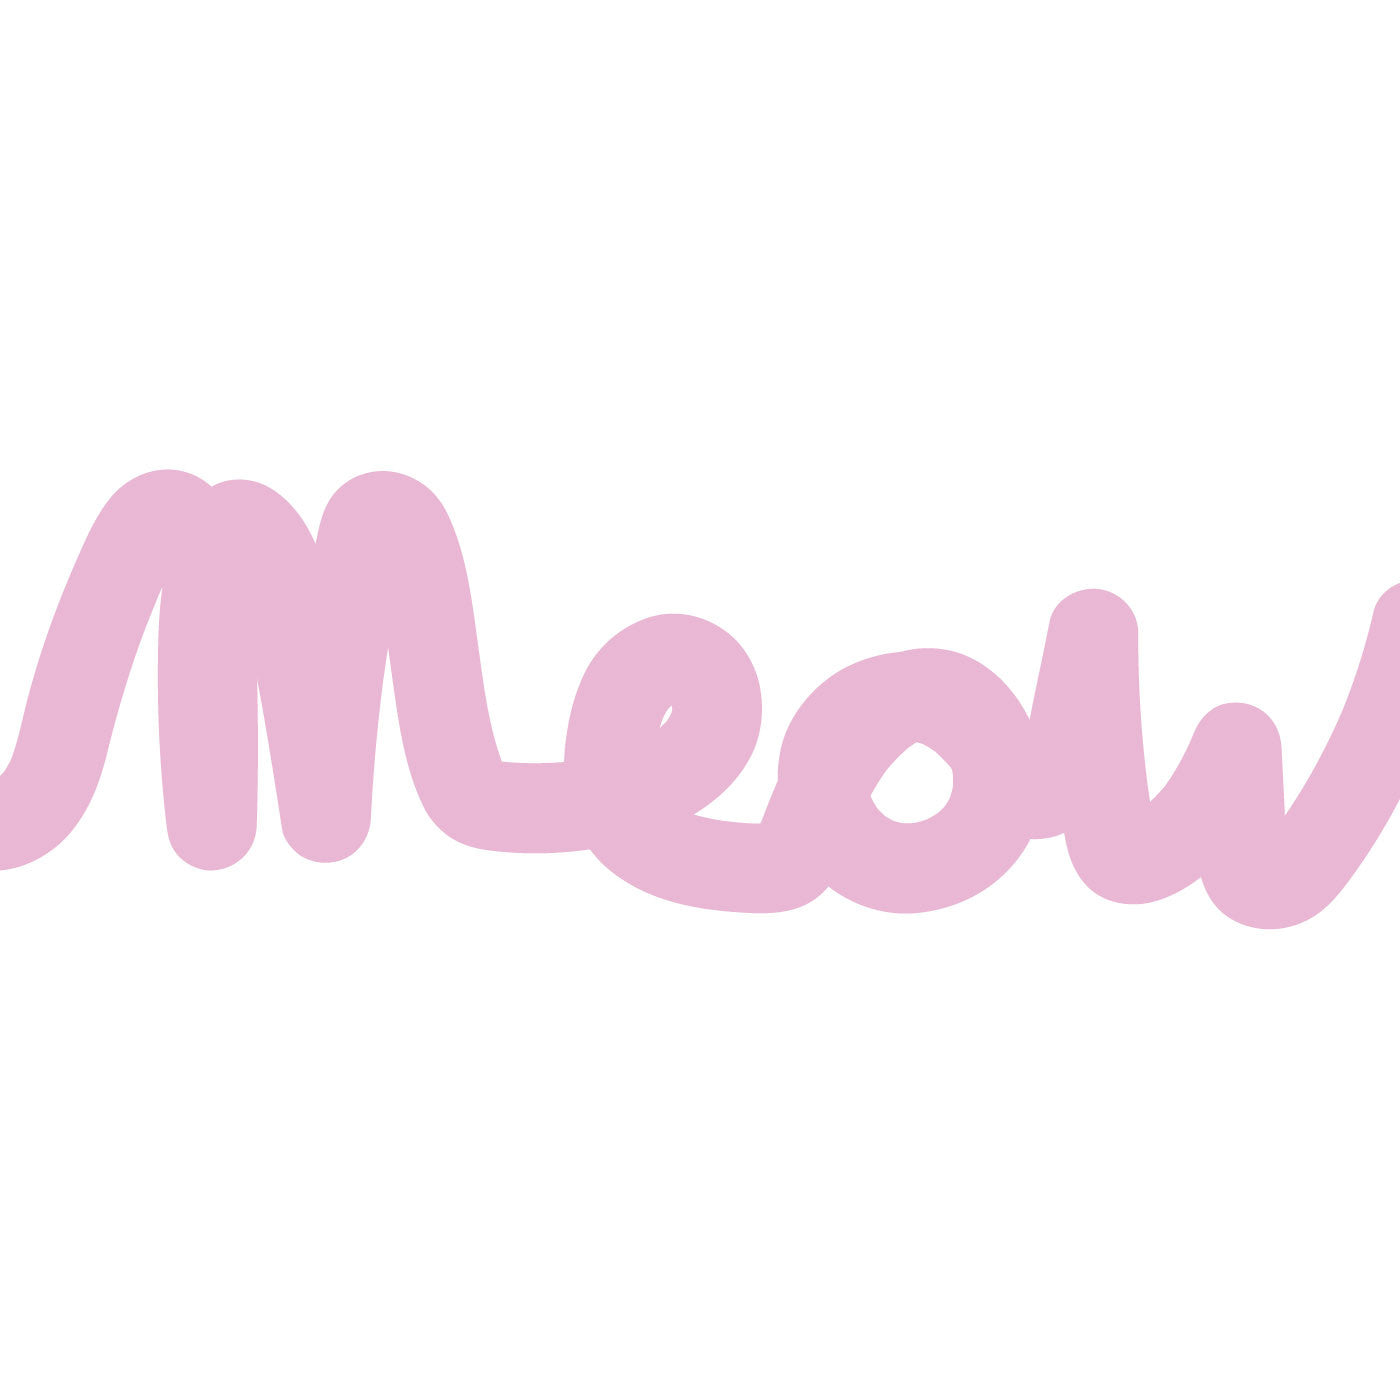 meow logo